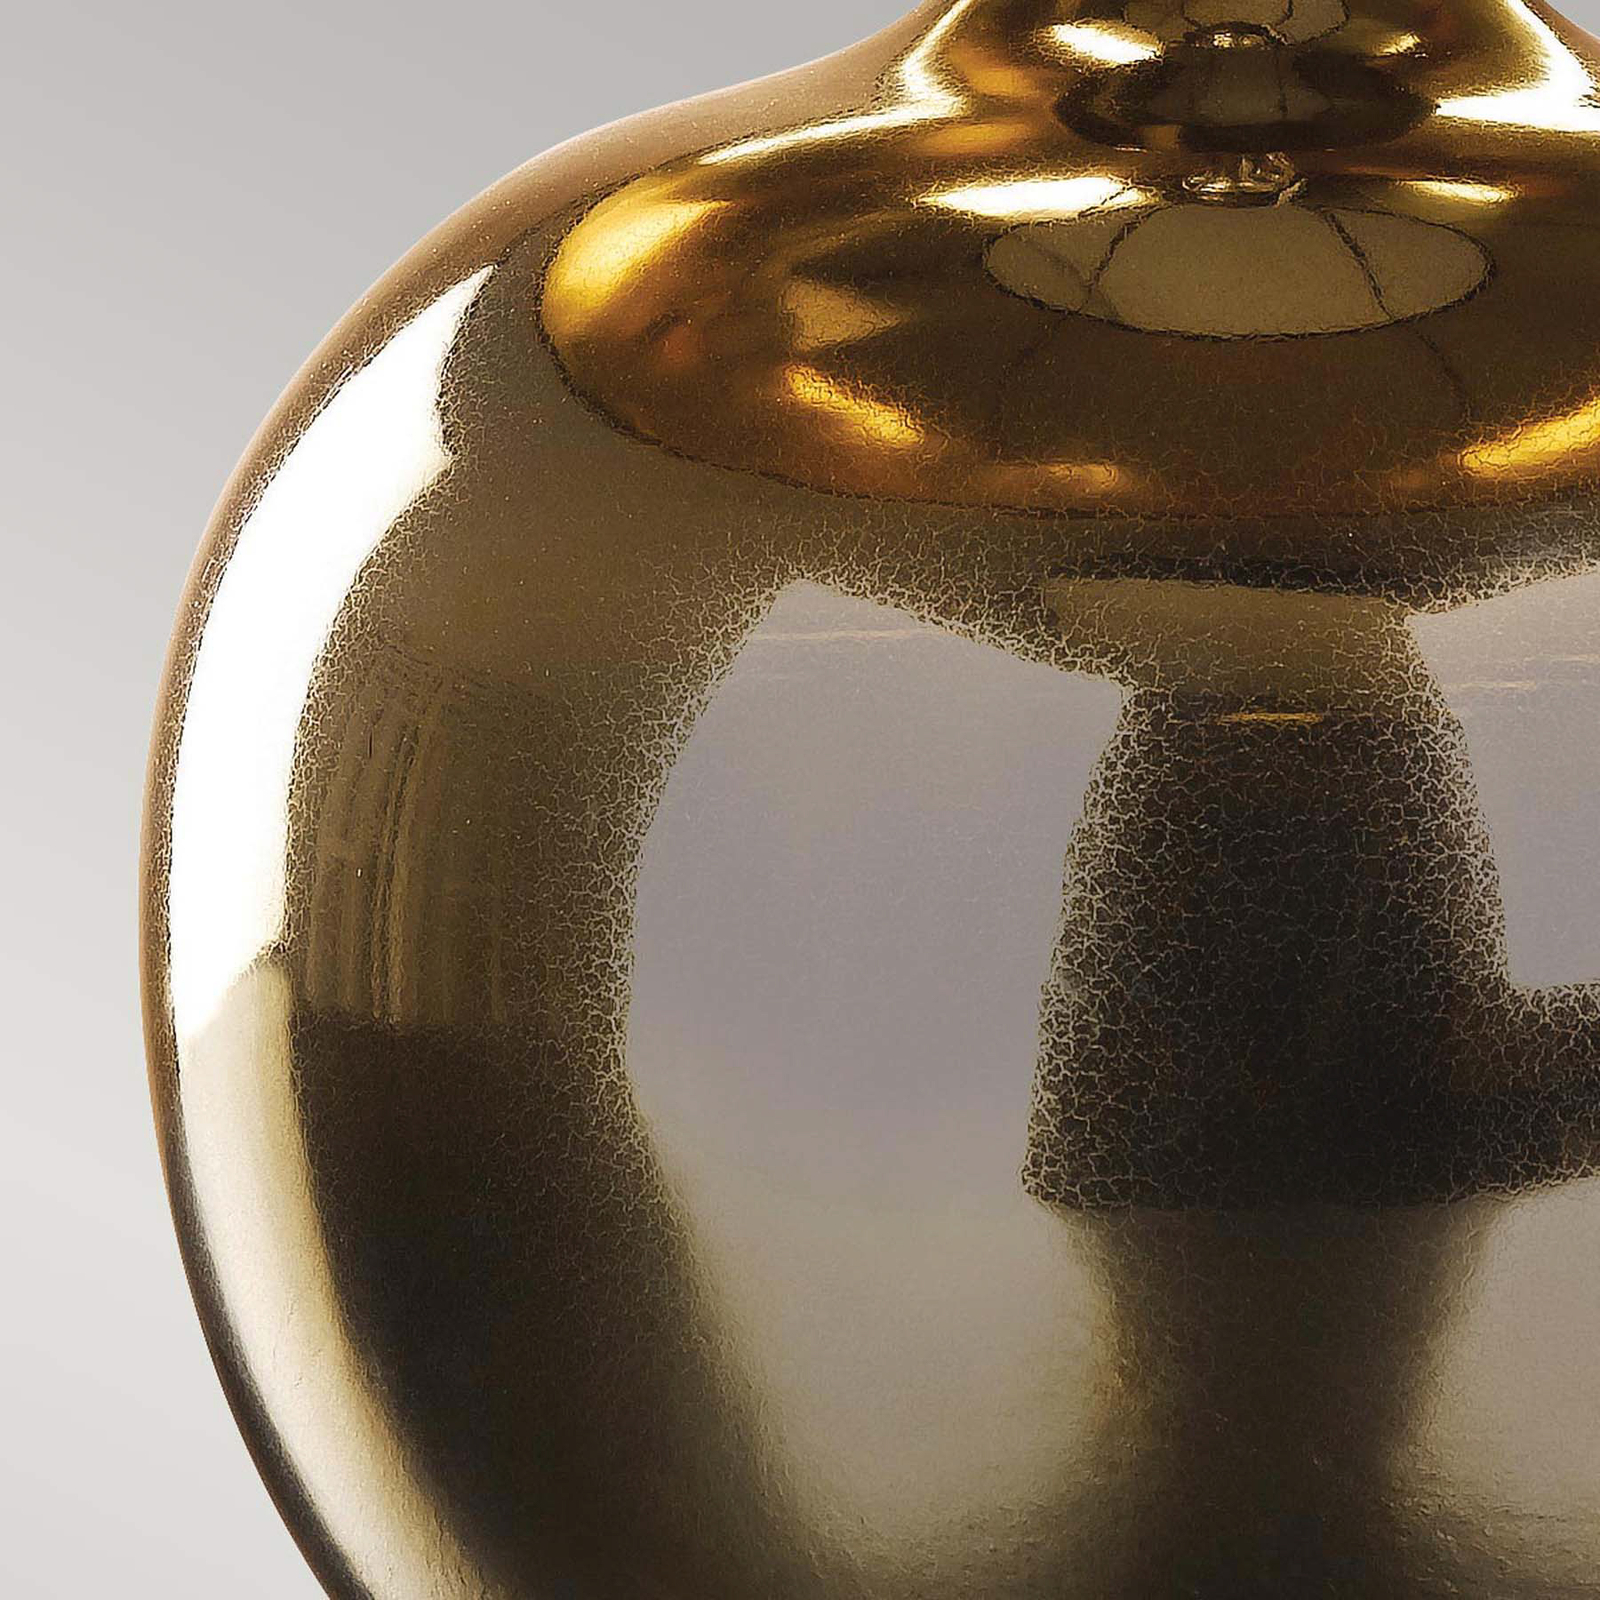 Ottoman bordslampa med keramisk bas, elfenbensfärgad skärm